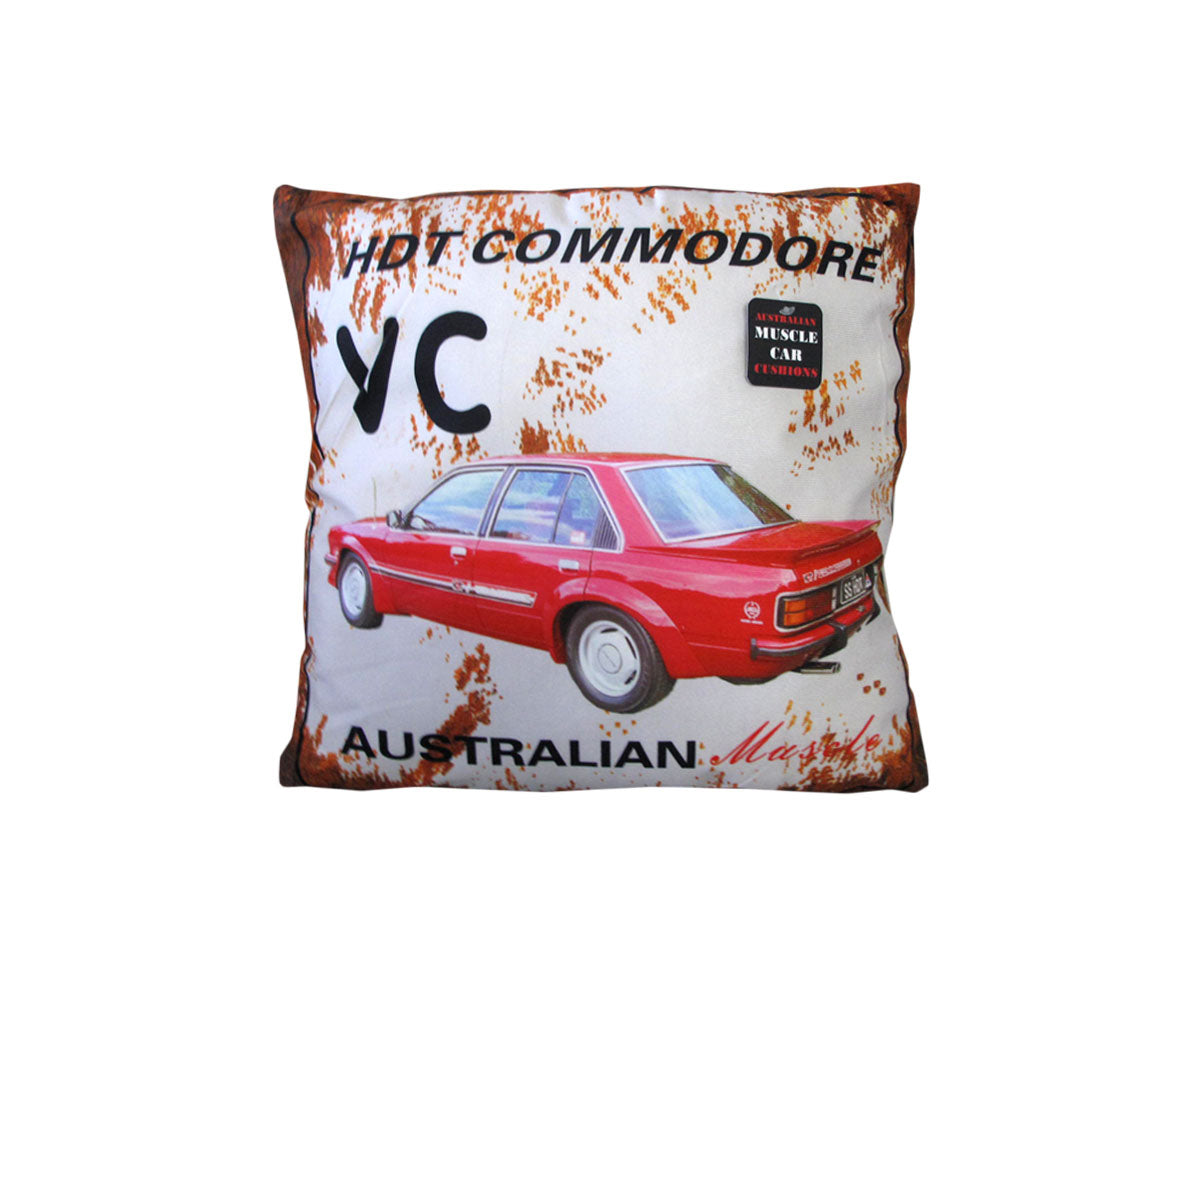 Australian Muscle Car Cushion VC HDT Comodore